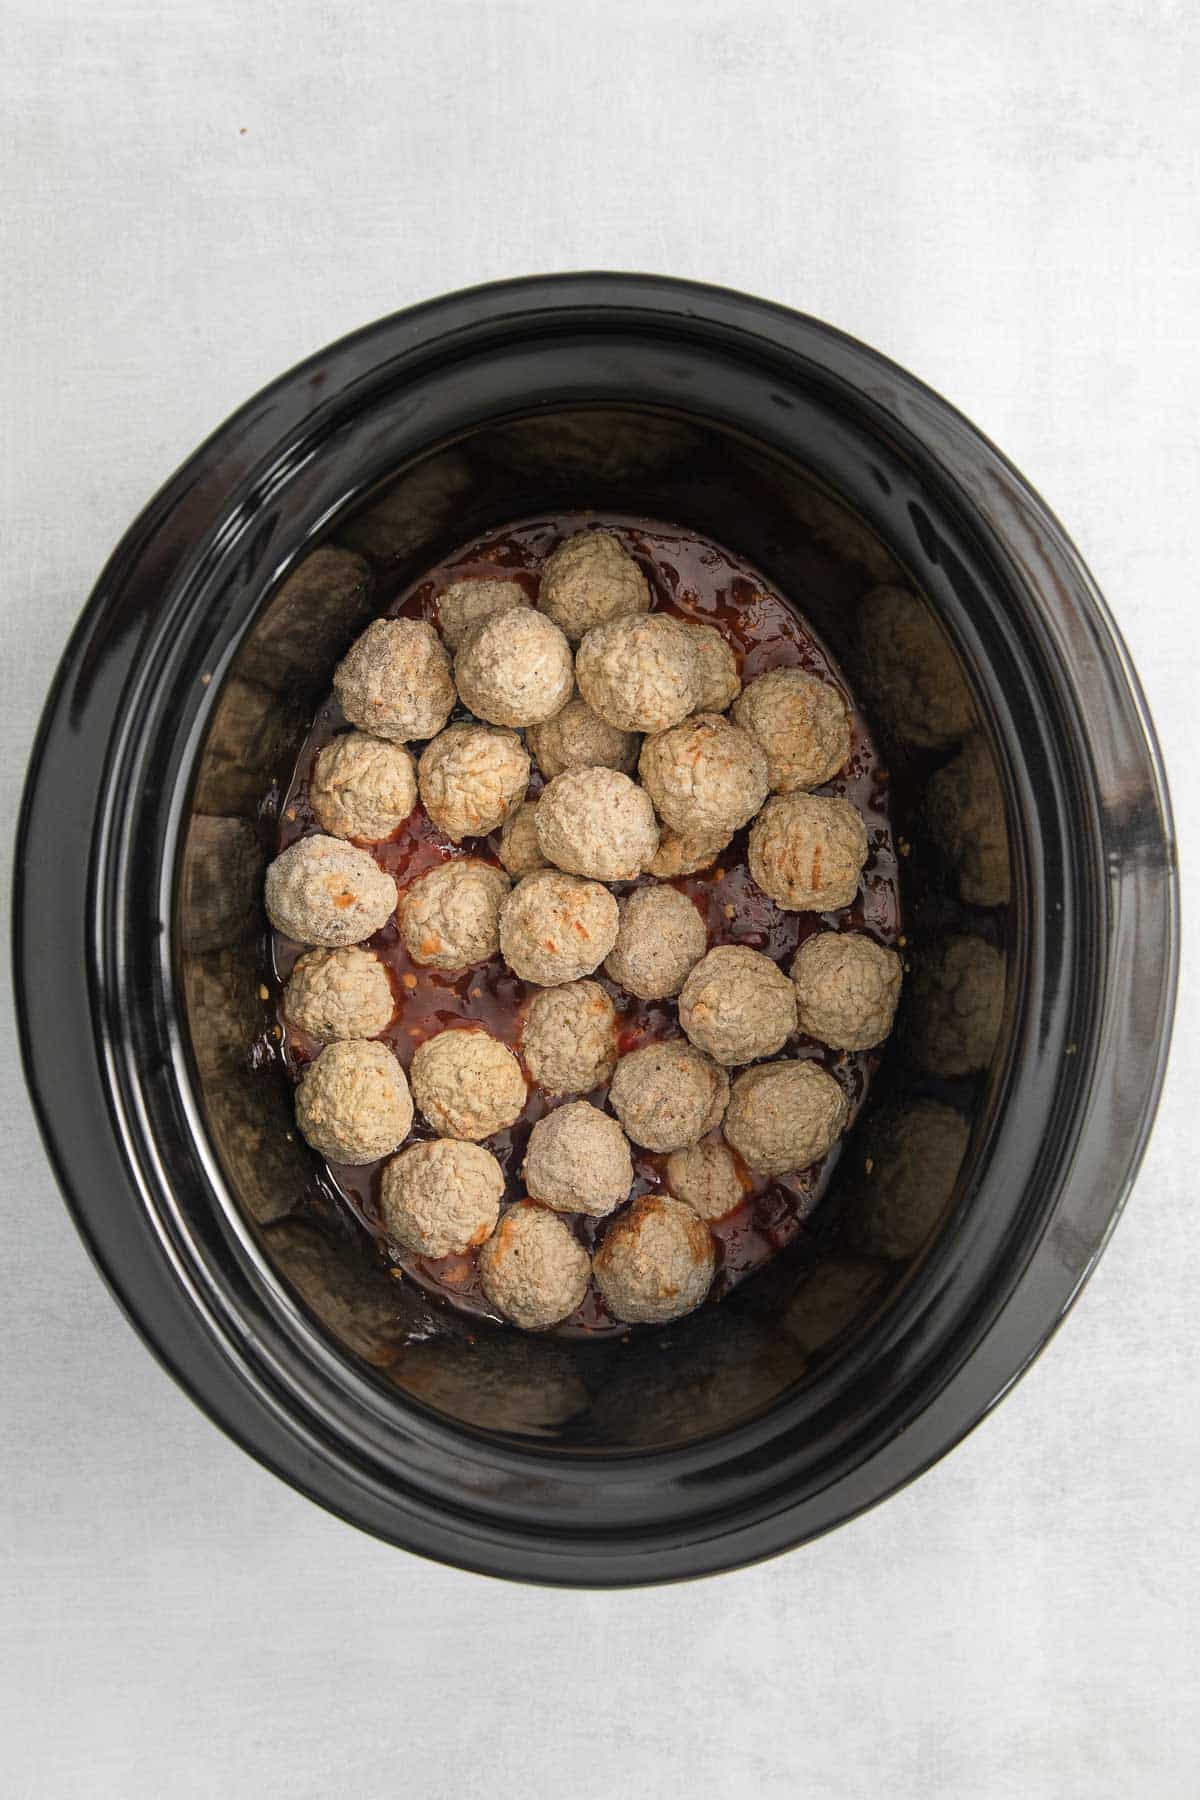 frozen meatballs in a black crock pot.